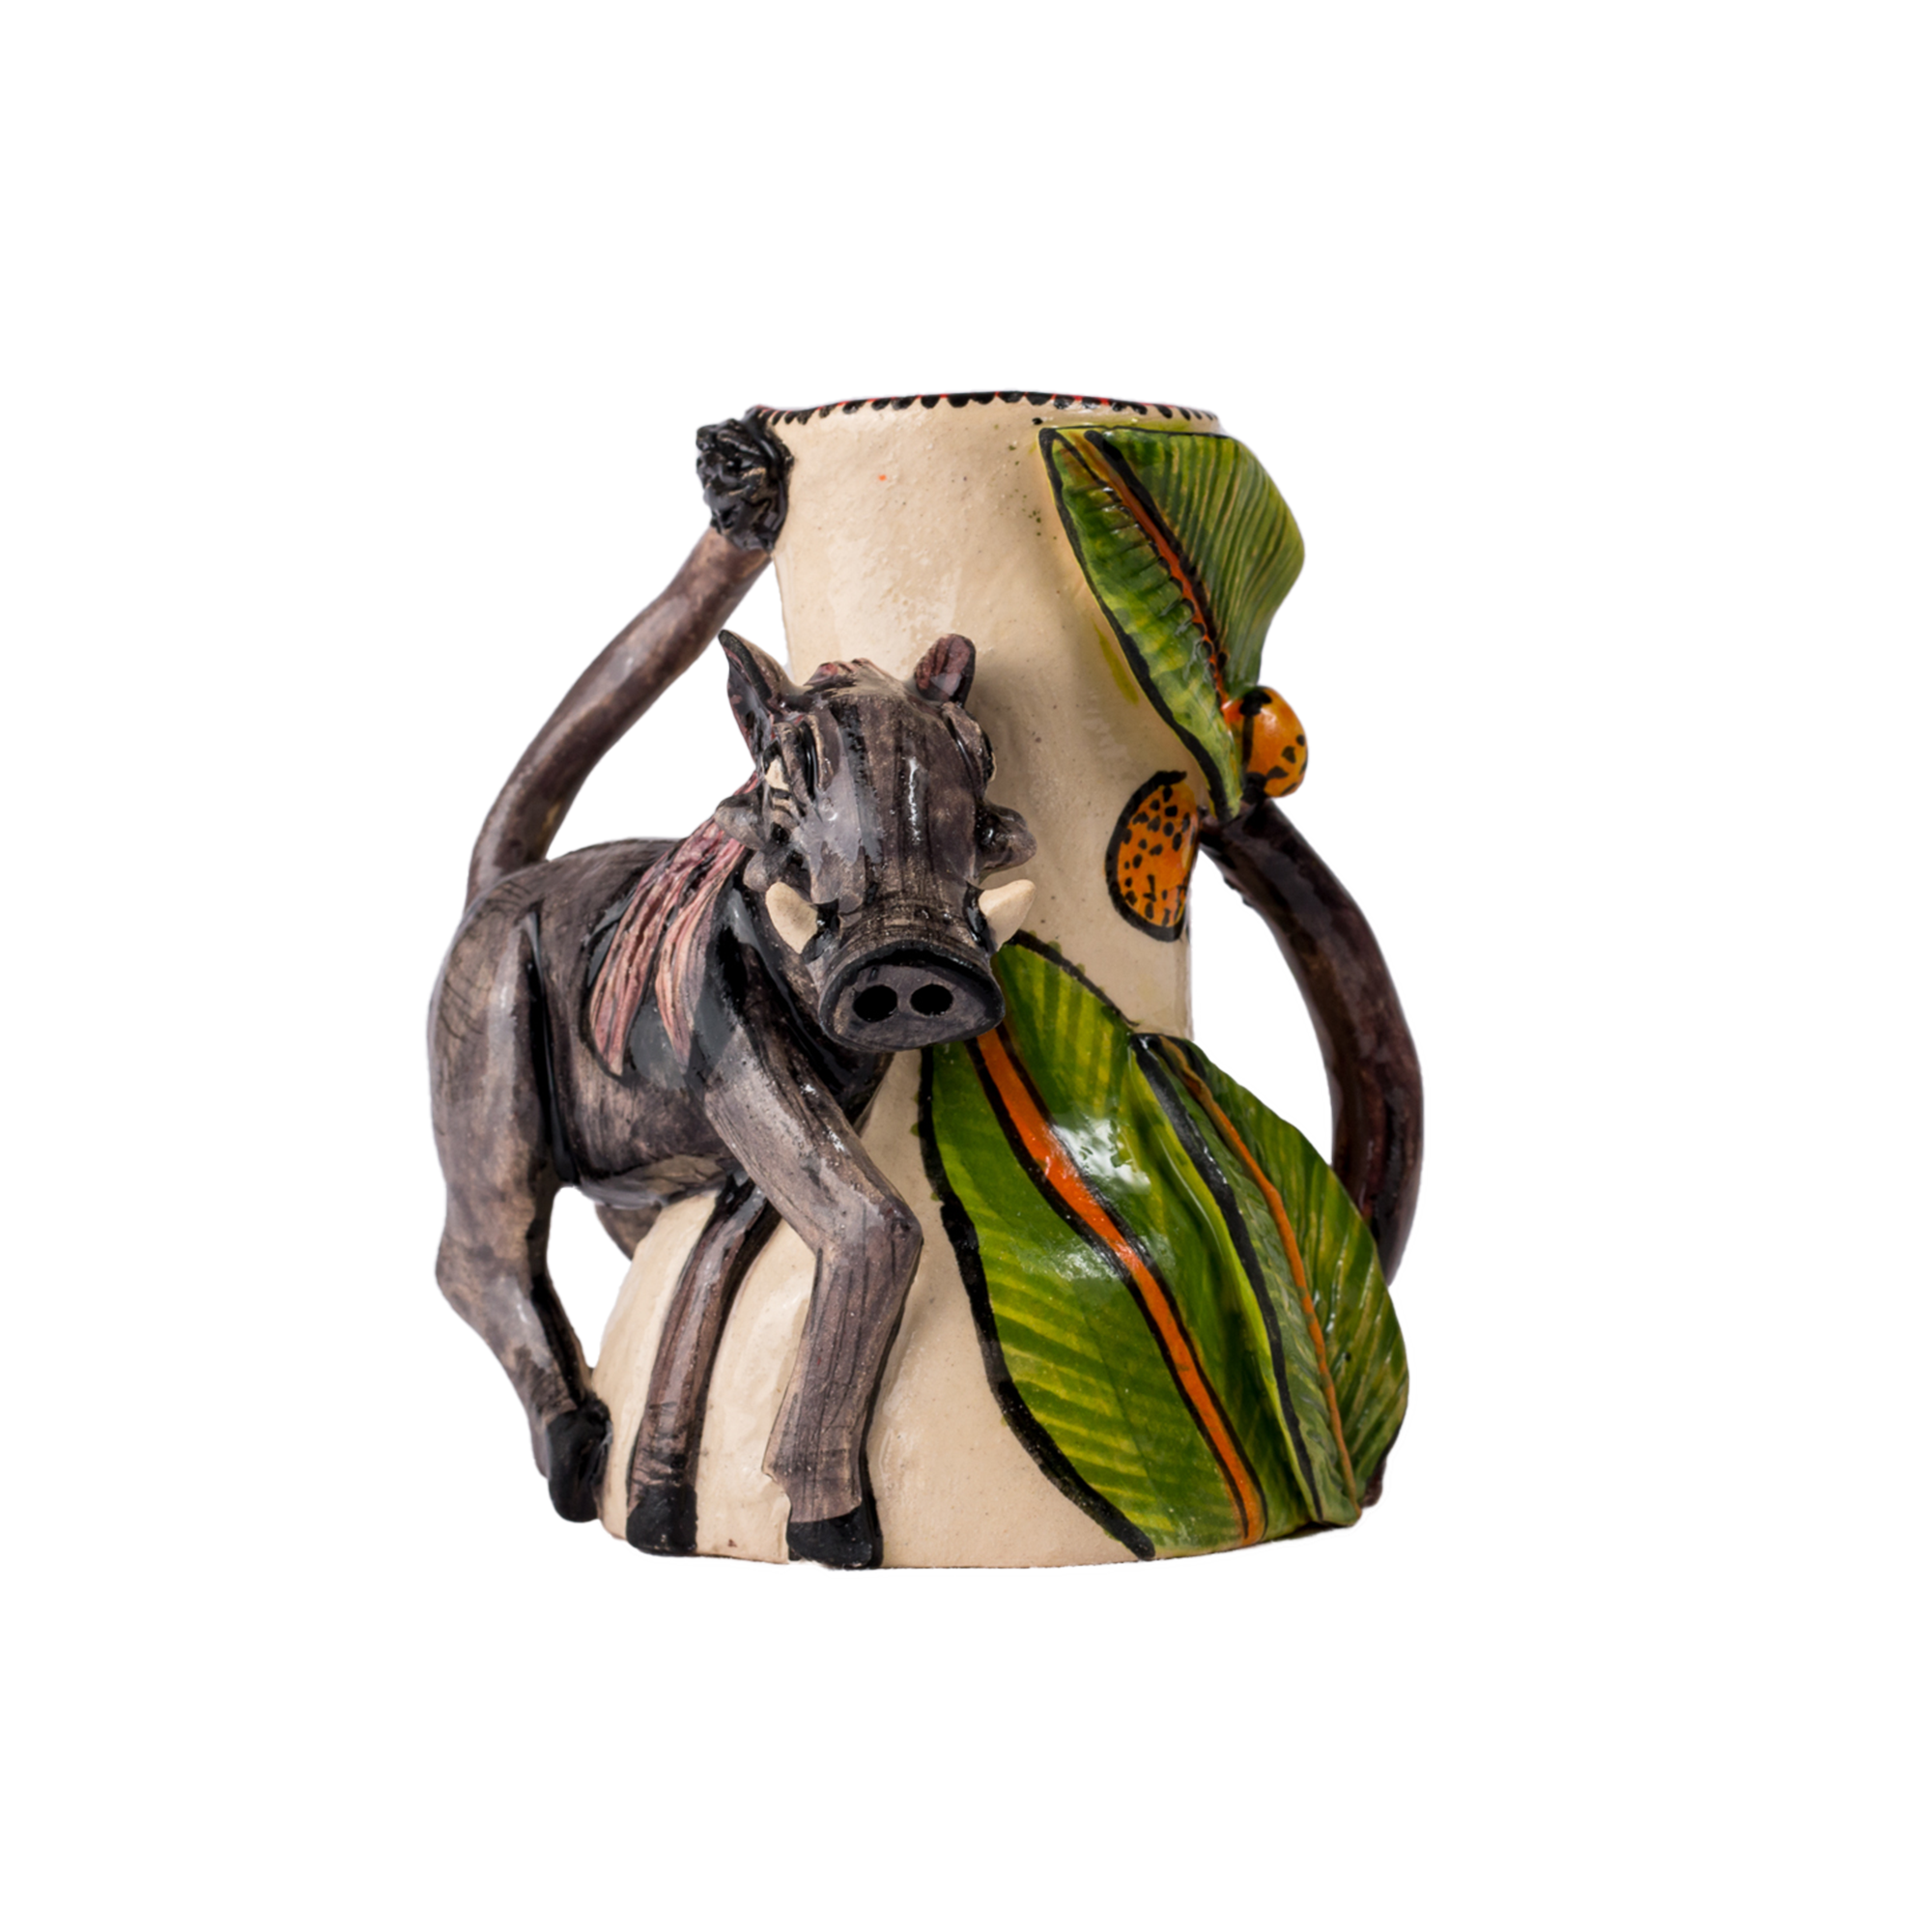 3D Ceramic Warthog Candle Holder